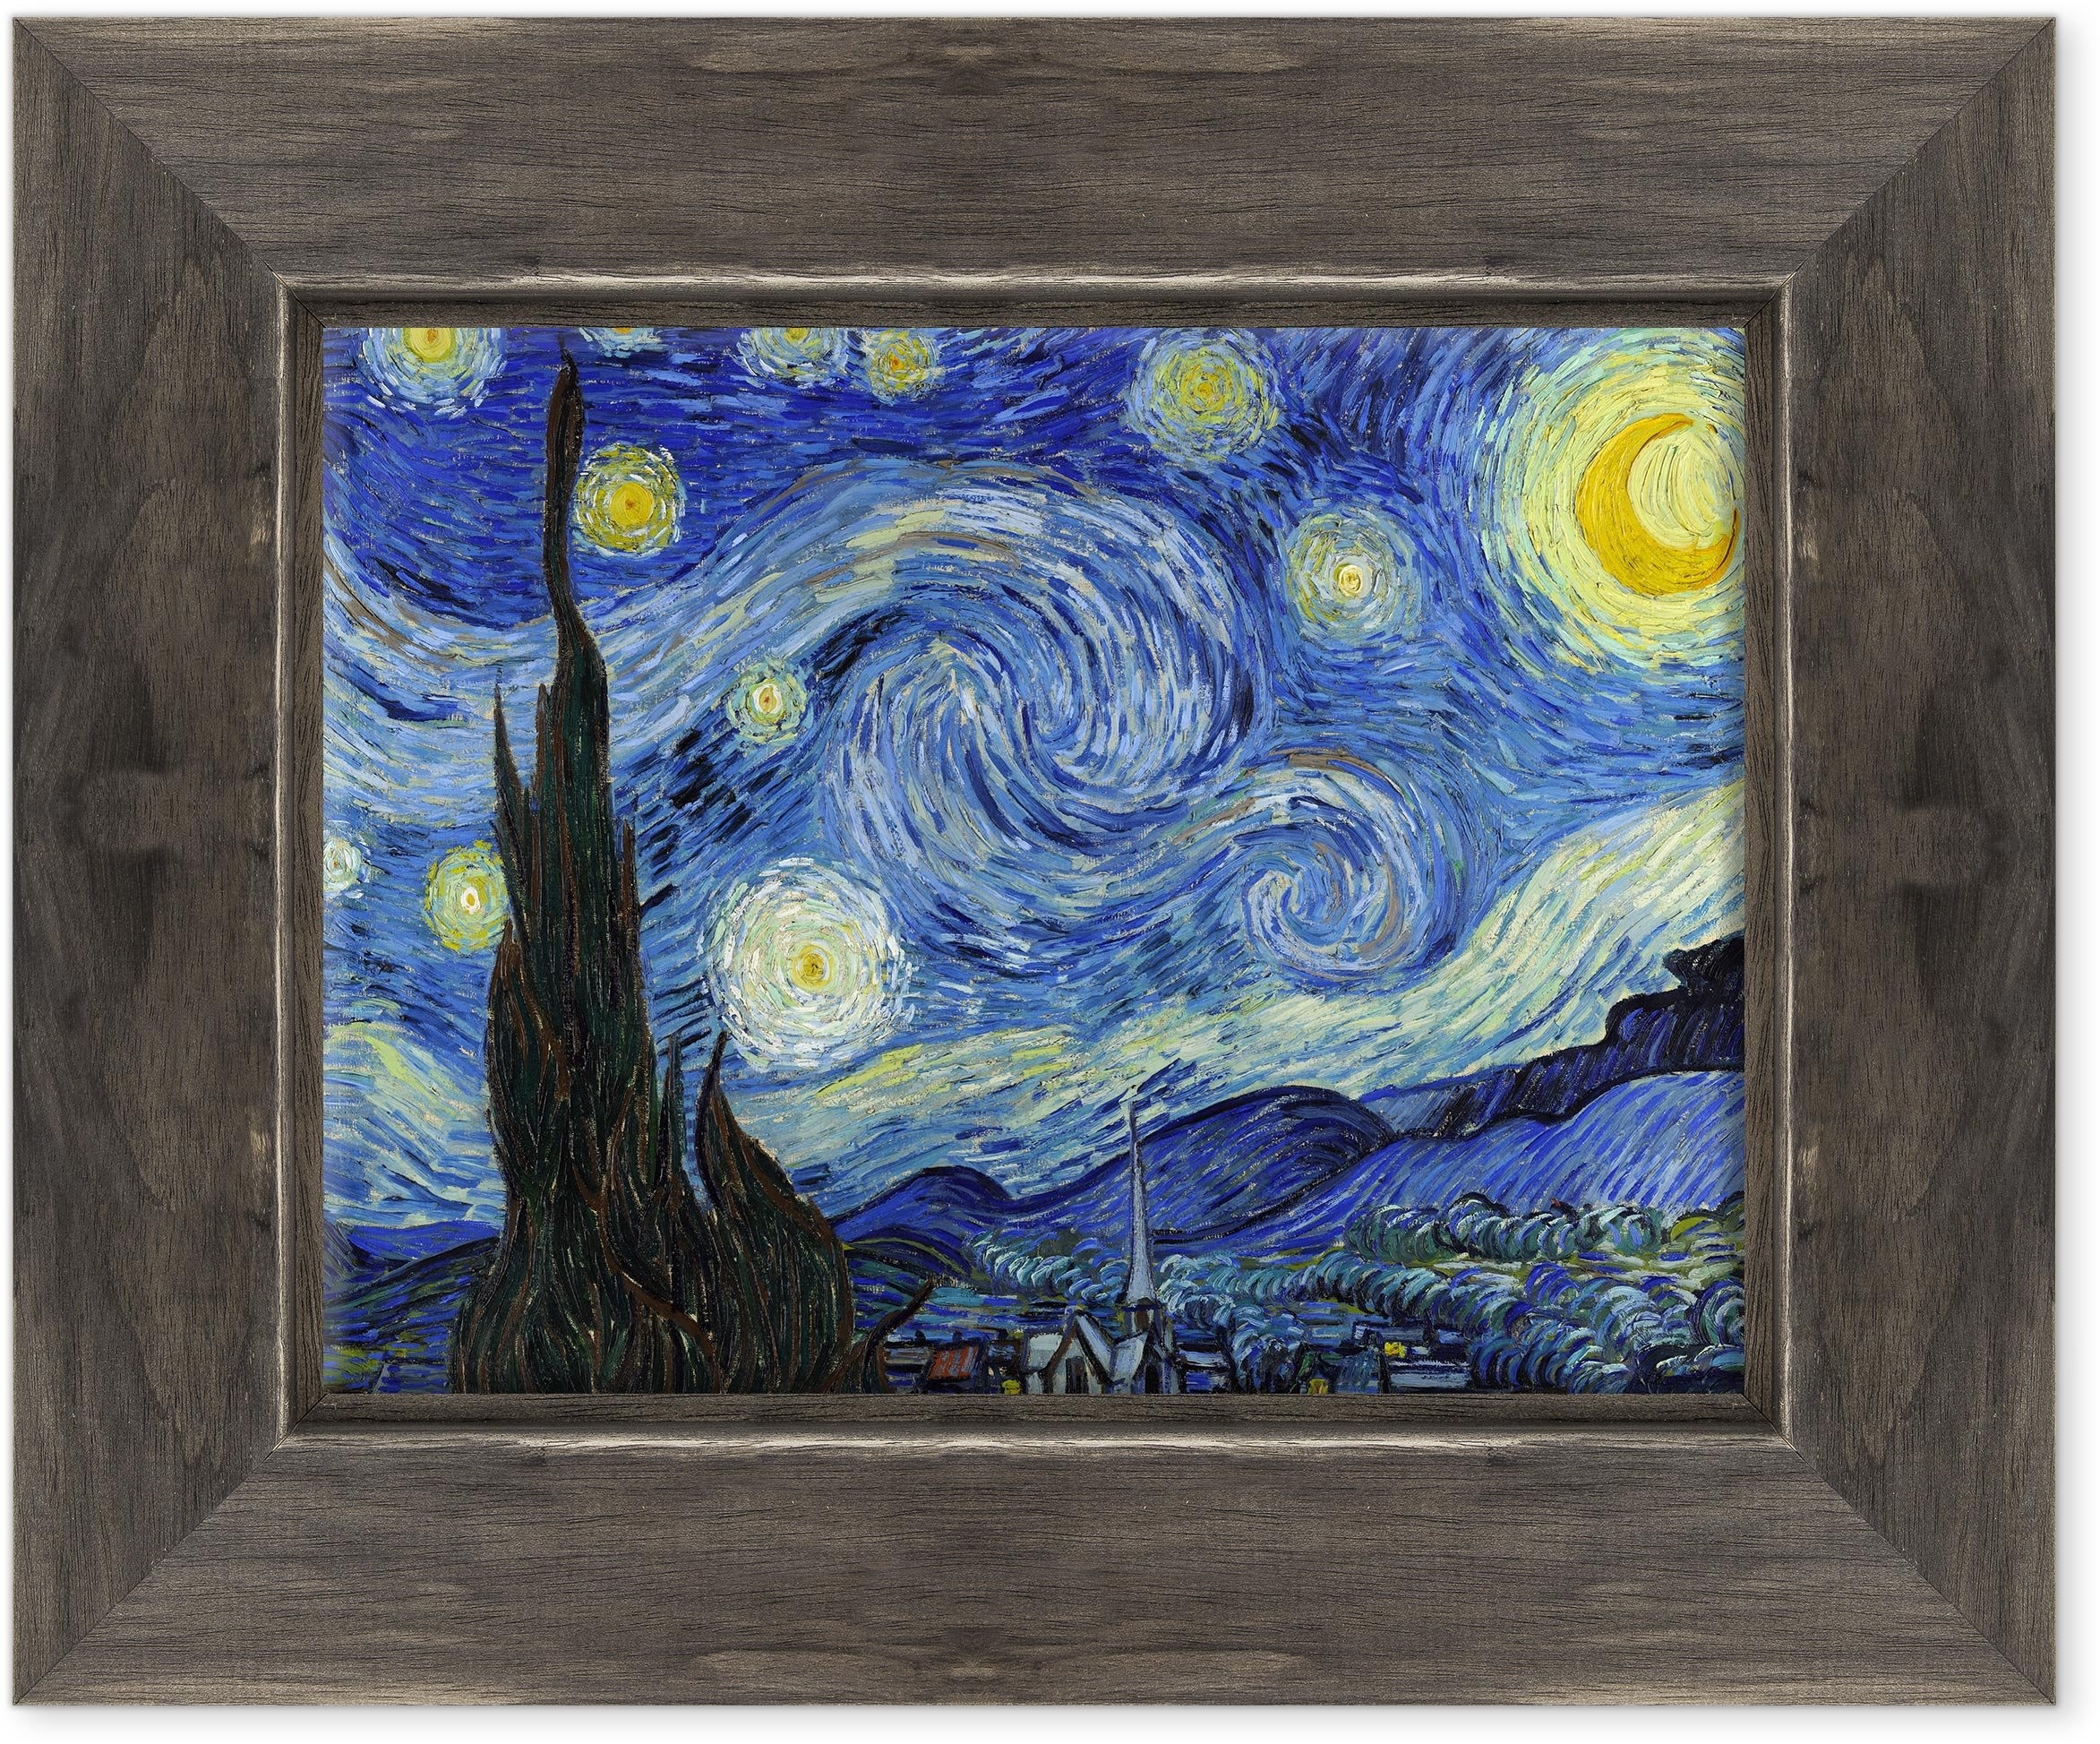 Bild auf Leinwand gerahmt – Van Gogh – Starry Night – Sternennacht – 30 x 40 cm – Country Style Schwarz Shabby – (Artikelnummer 2671)